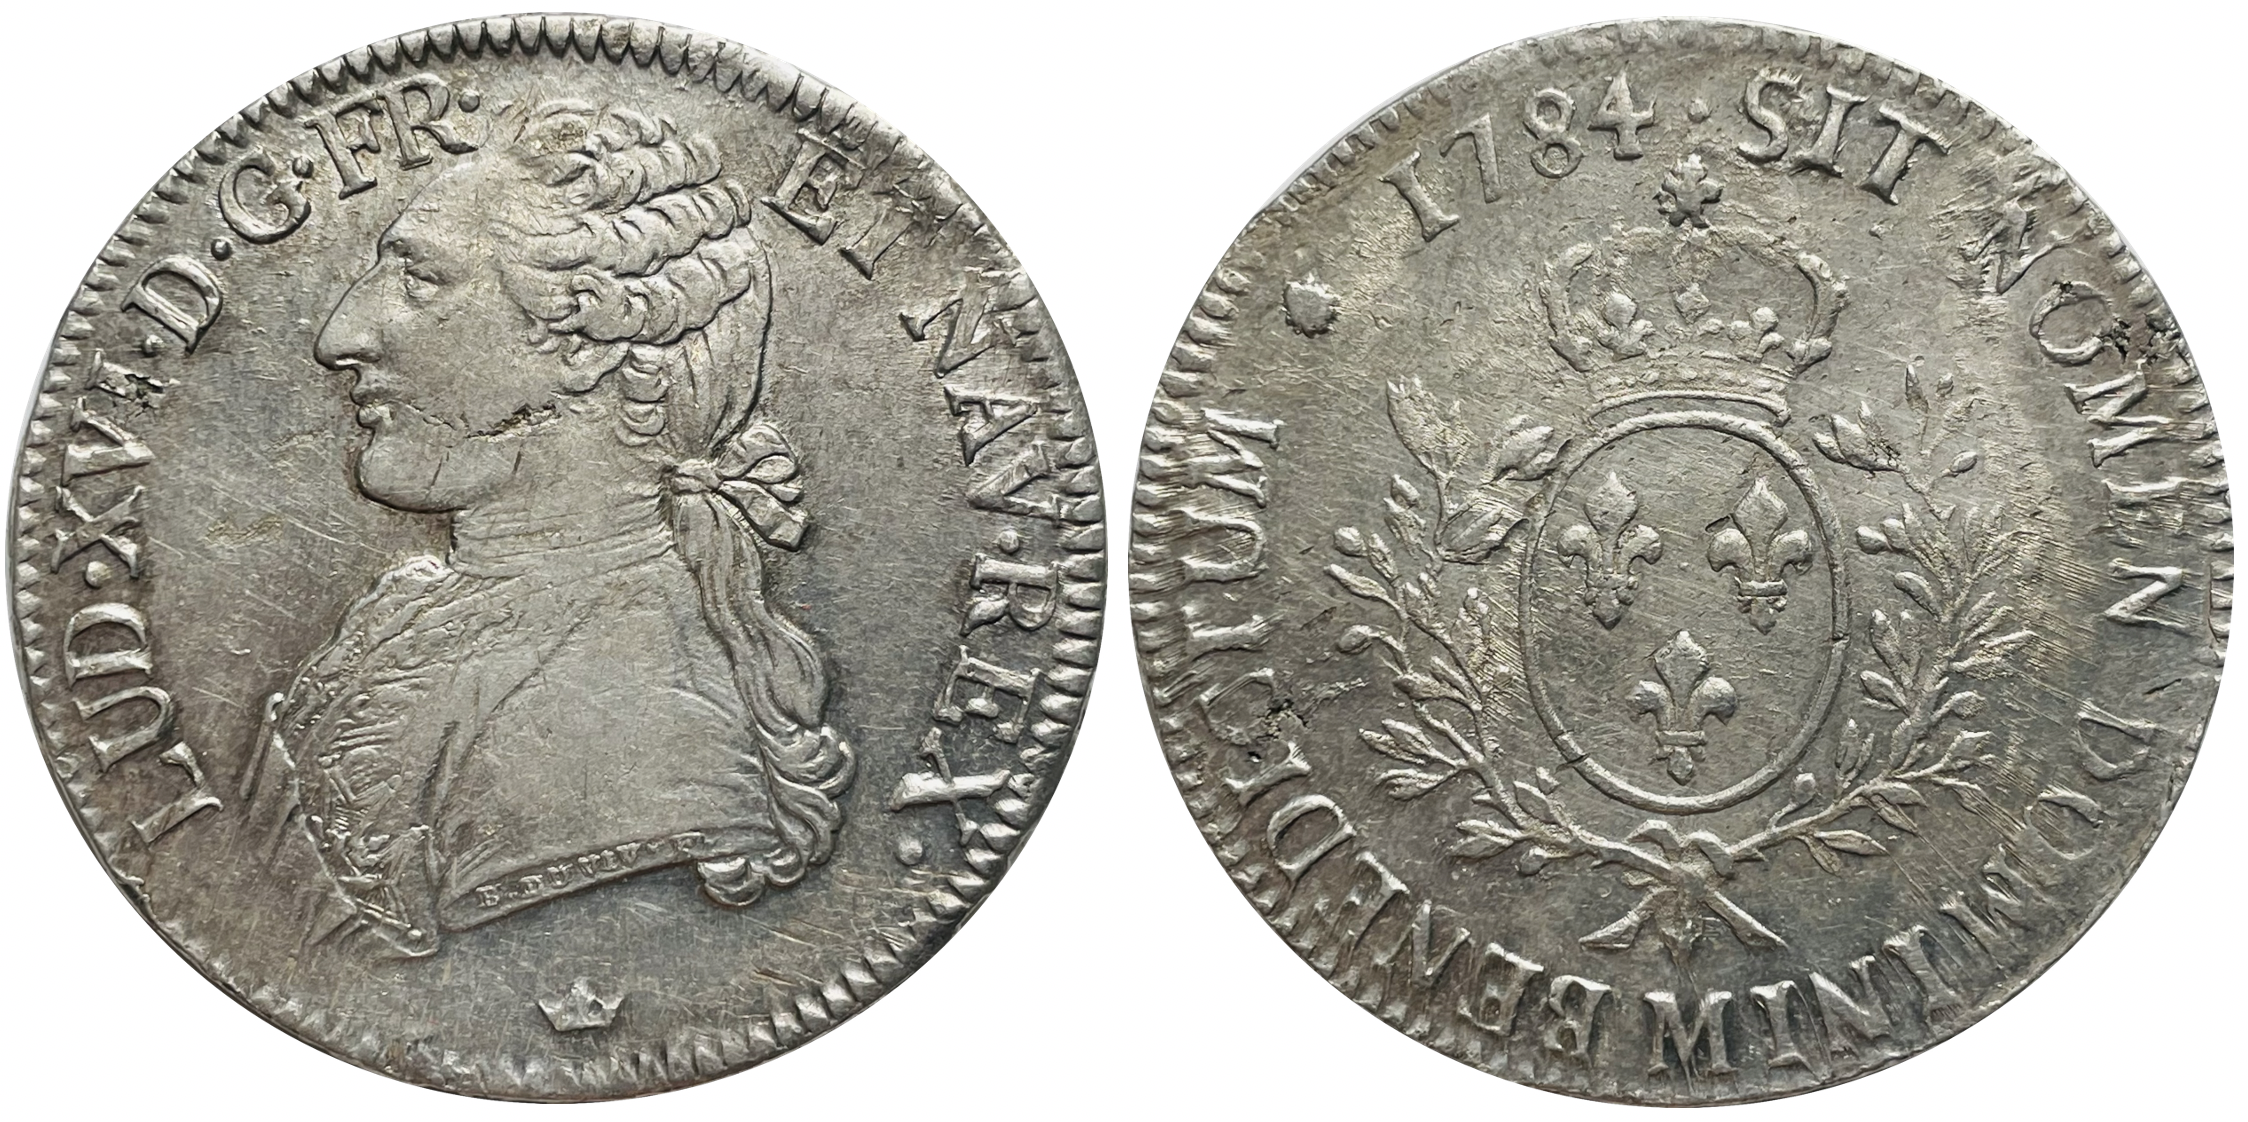 Silver coin - Wikipedia